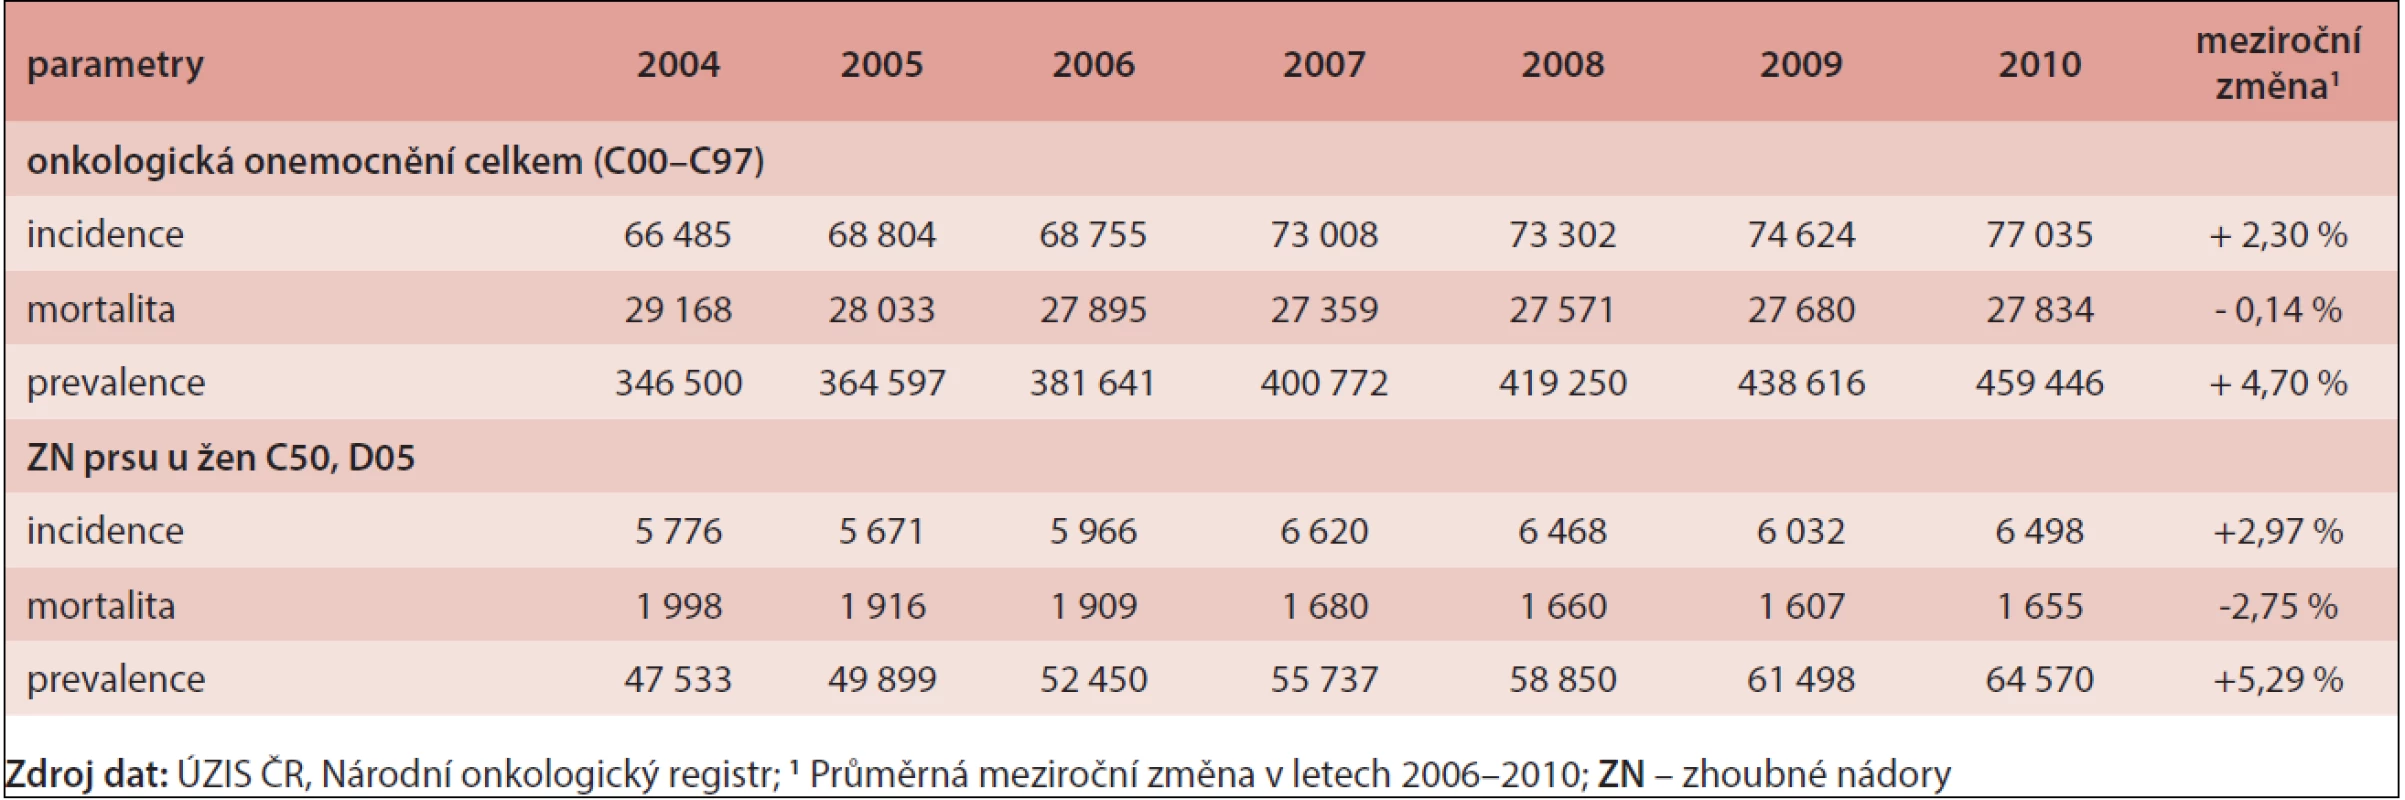 Současné trendy epidemiologických charakteristik onkologických onemocnění v ČR